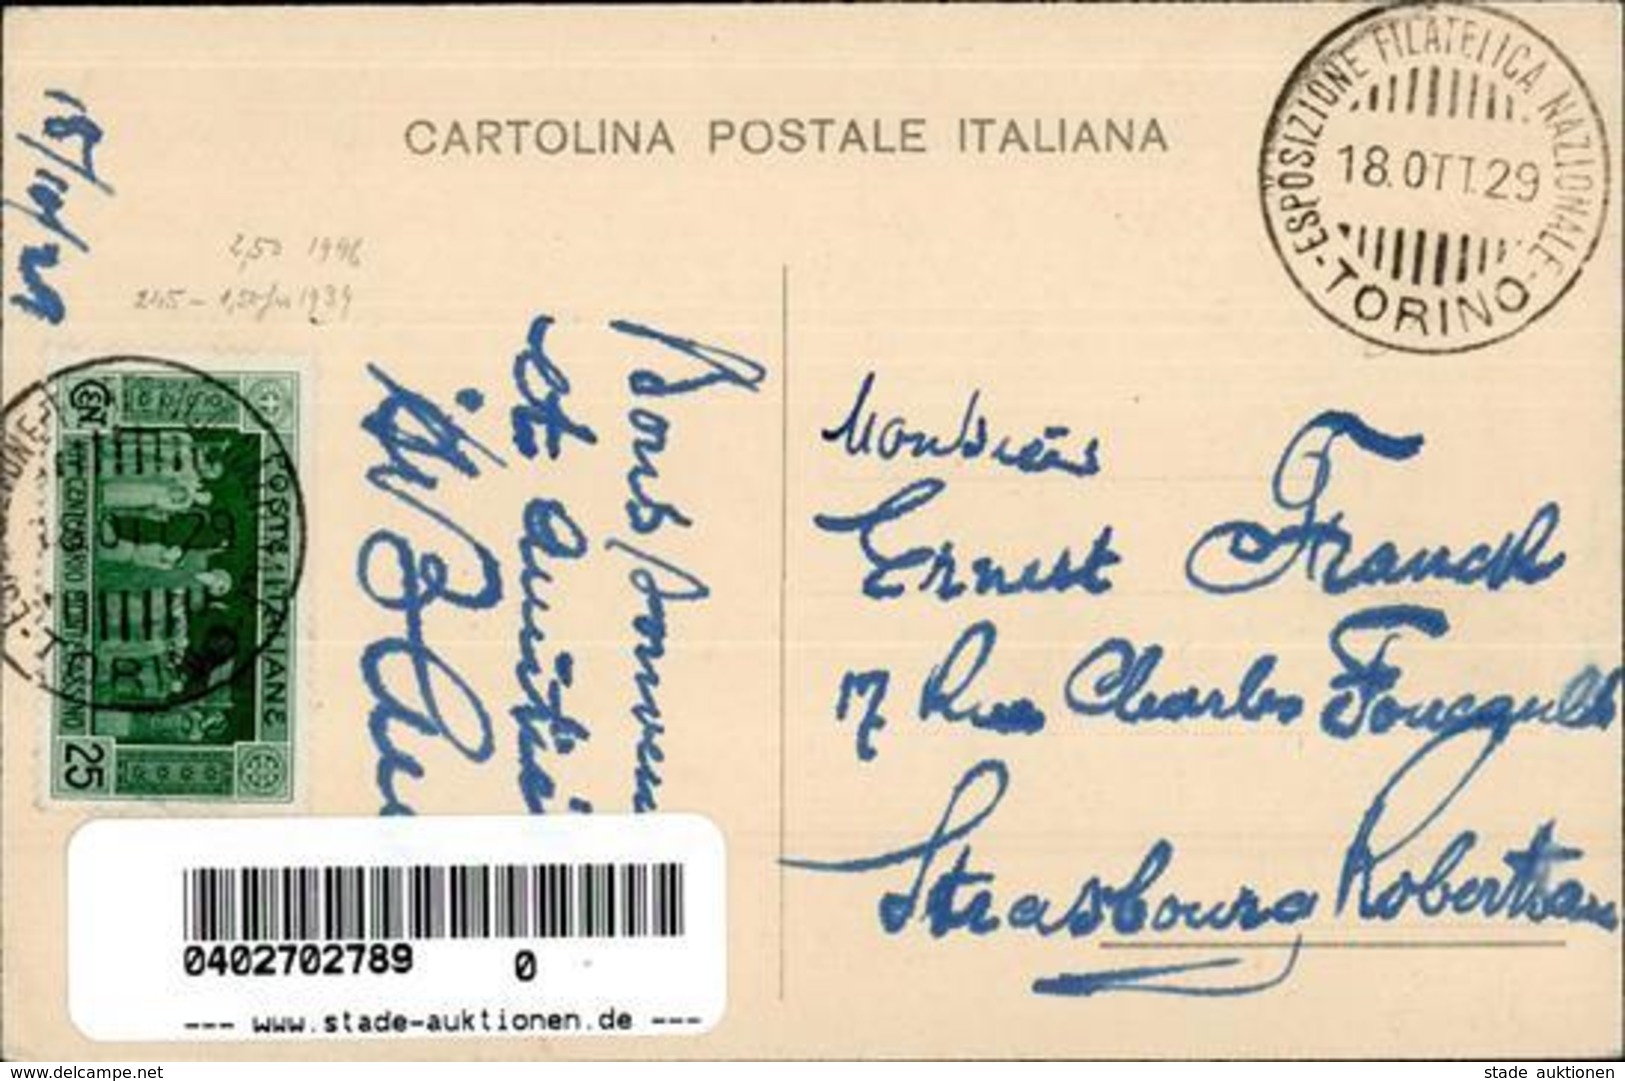 Philatelistentag Torino (10100) Italien XVI. Congresso Filatelico Italiano I-II - Postal Services